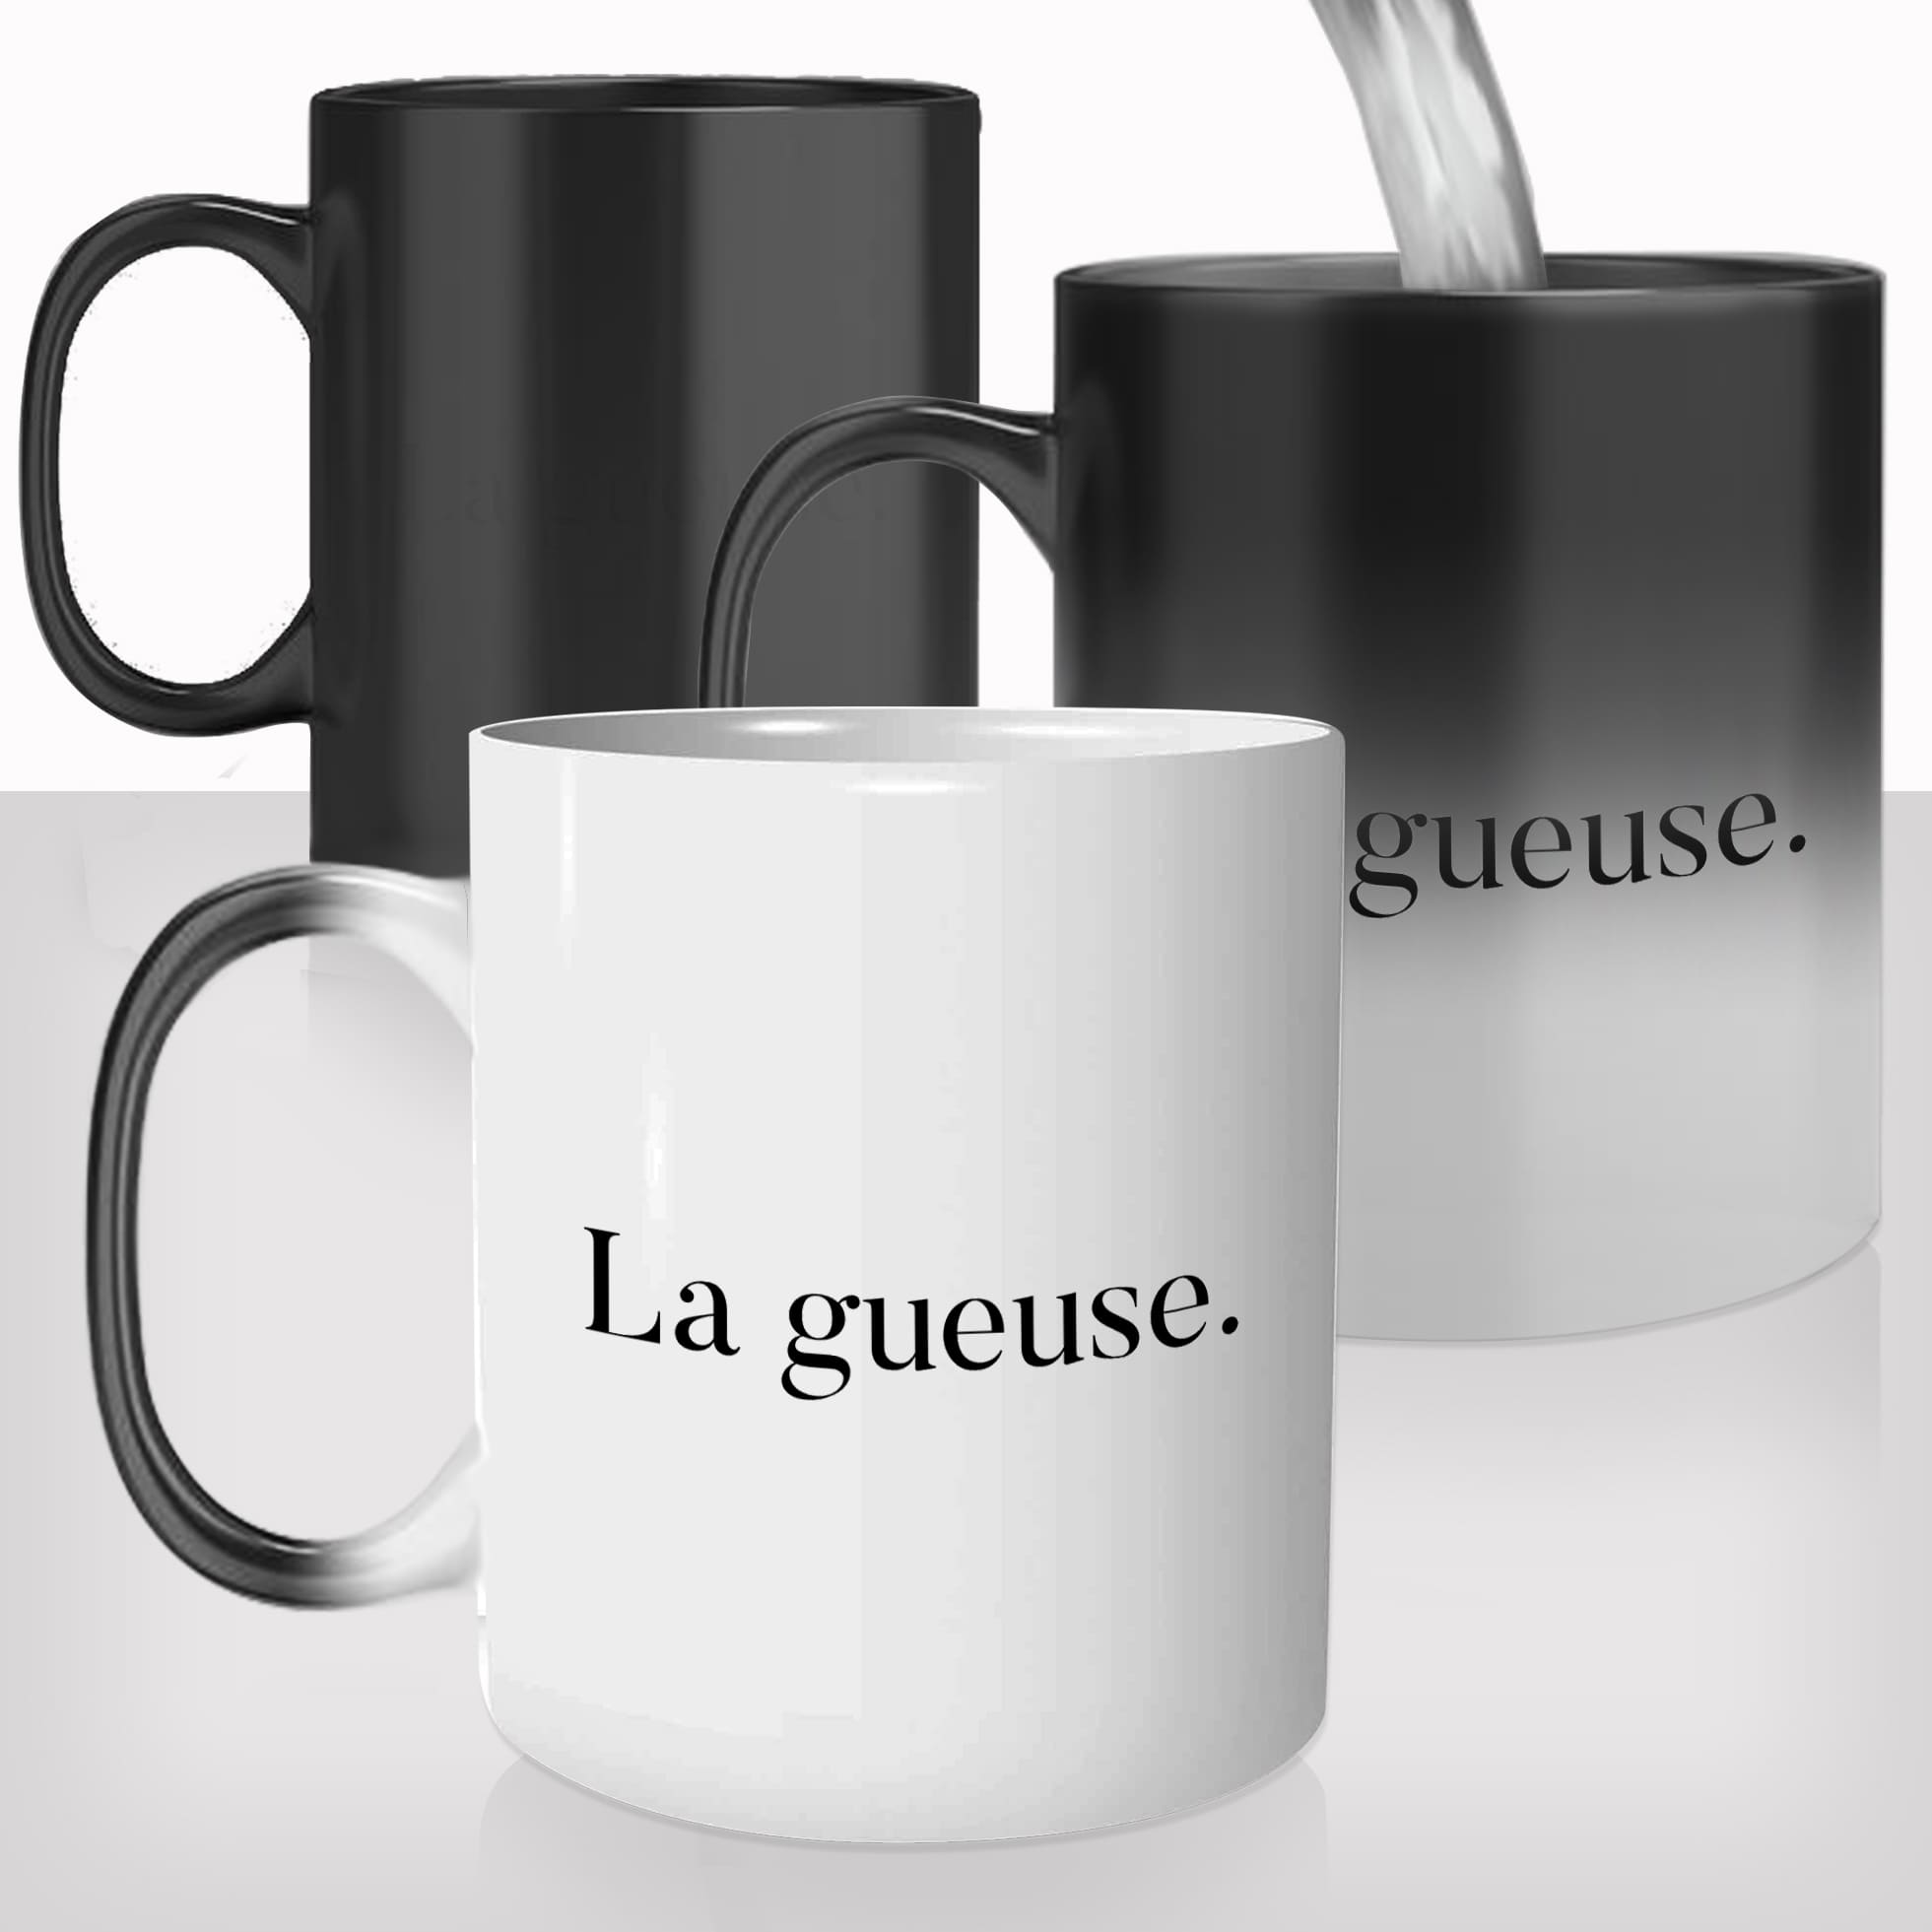 mug-magique-tasse-magic-thermo-reactif-film-culte-francais-la-gueuse-les-visiteurs-photo-personnalisable-offrir-cadeau-café-thé-original-fun